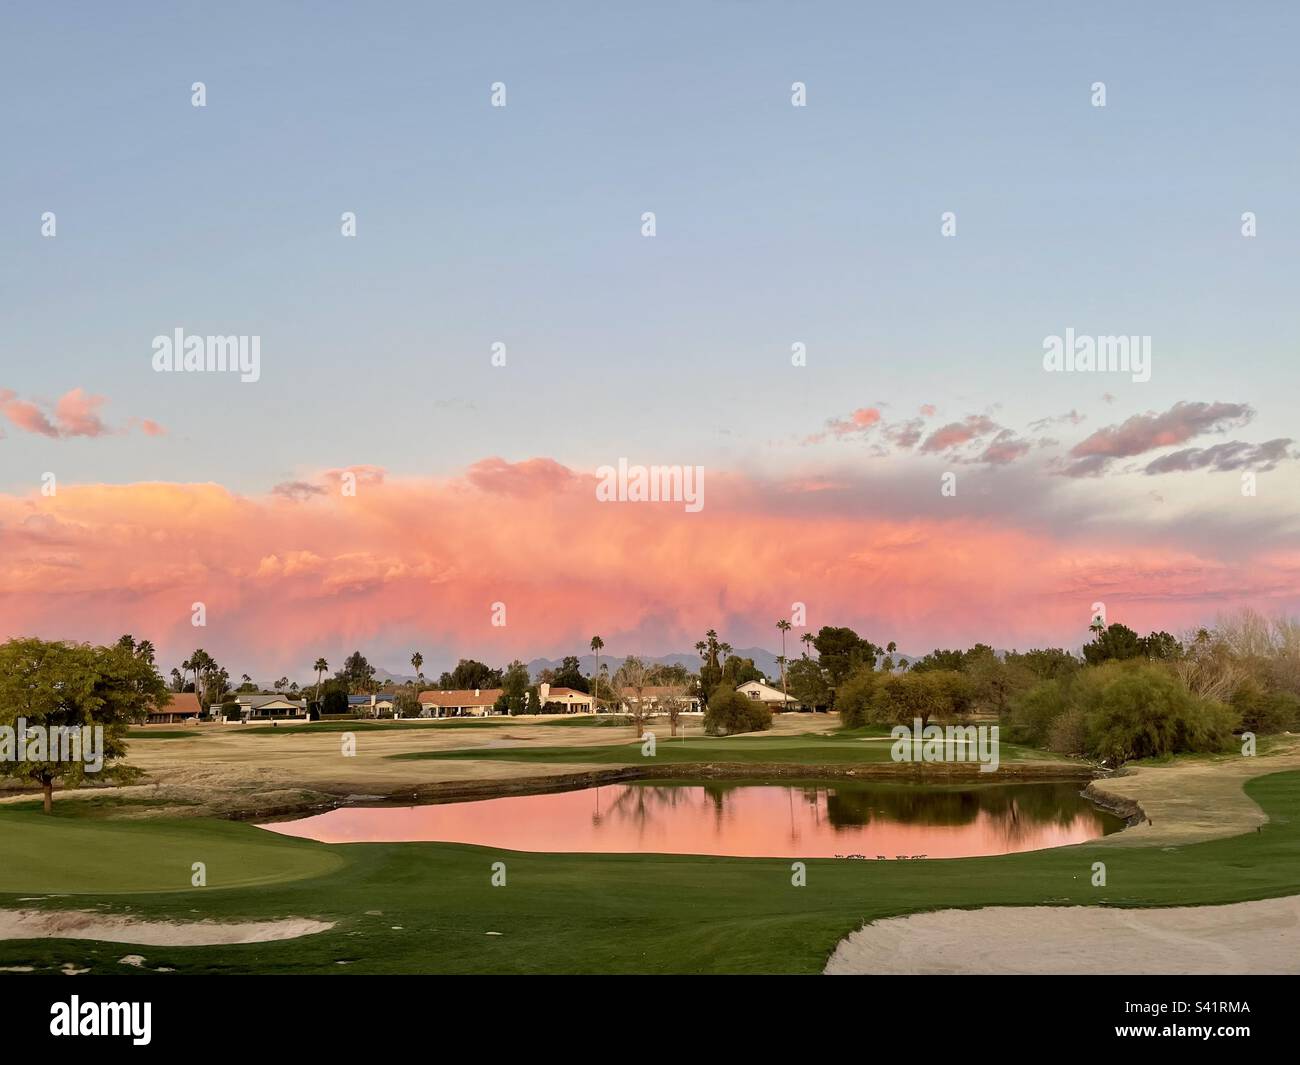 Coucher de soleil en Arizona, parcours de golf de Scottsdale, vert, fairway, pièges à sable, Pond Reflections, nuages roses et jaunes, Scottsdale, AZ, Etats-Unis Banque D'Images